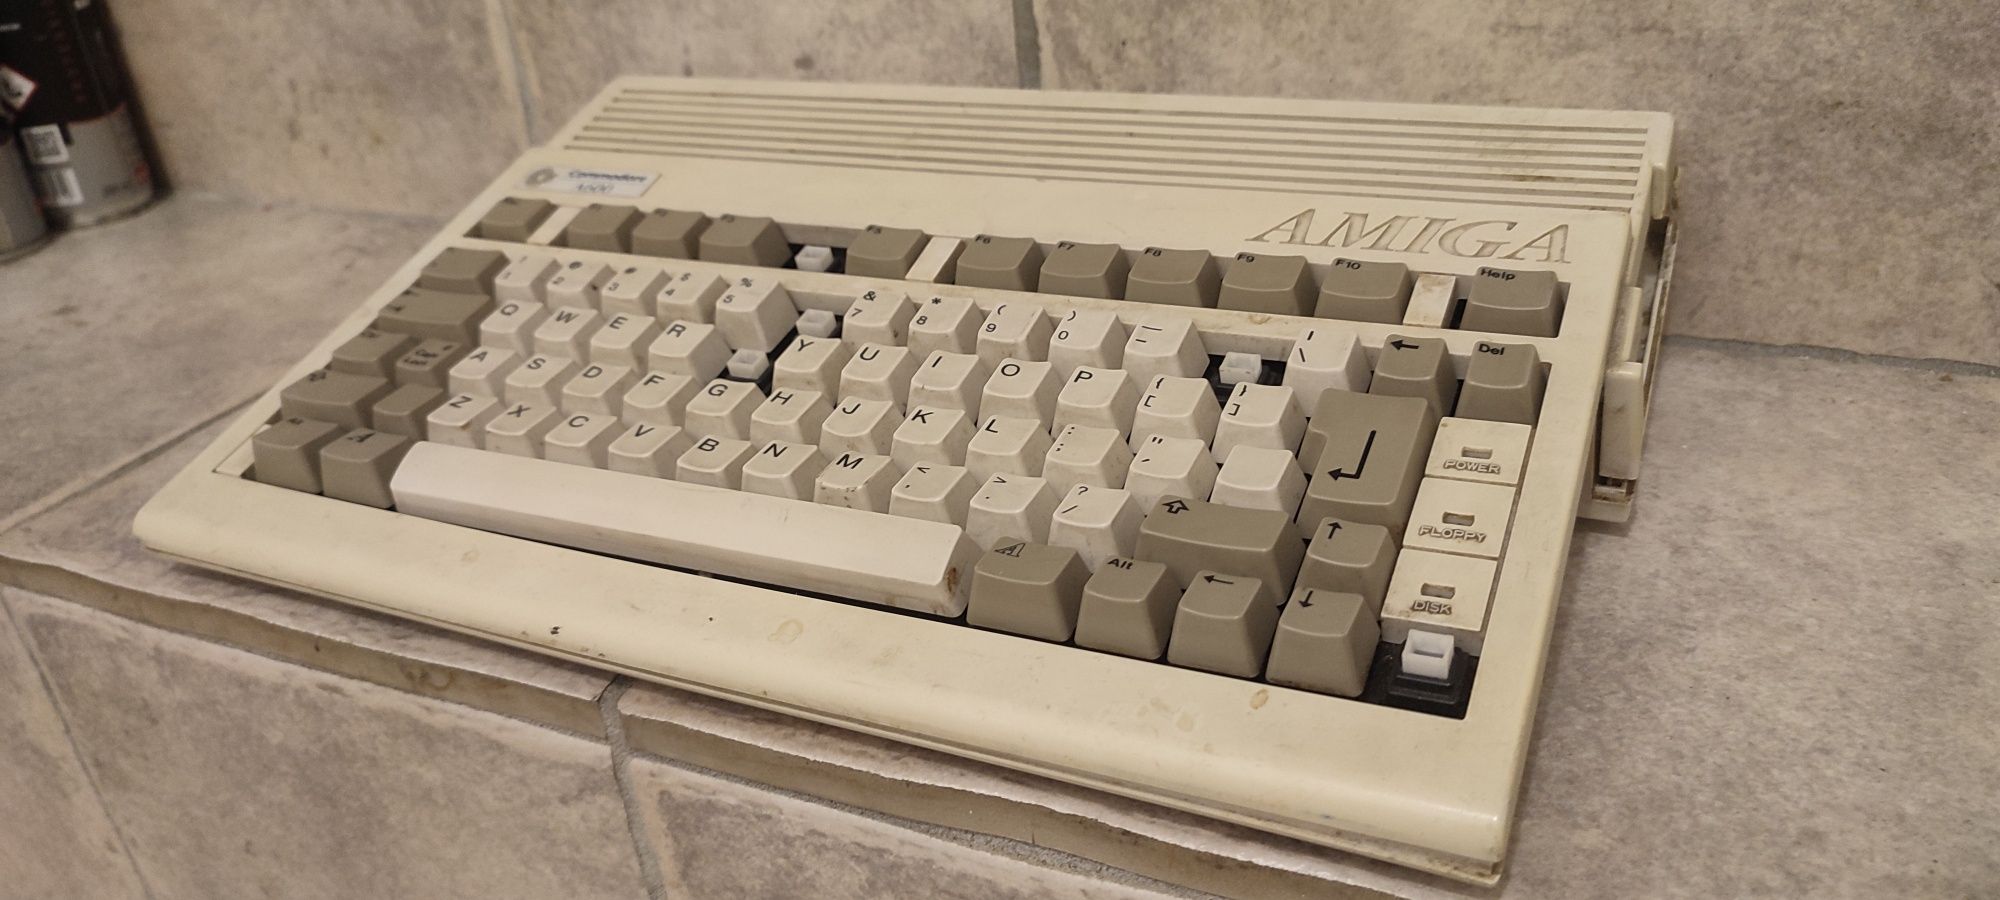 Amiga 600 zamienię na stare kapselki